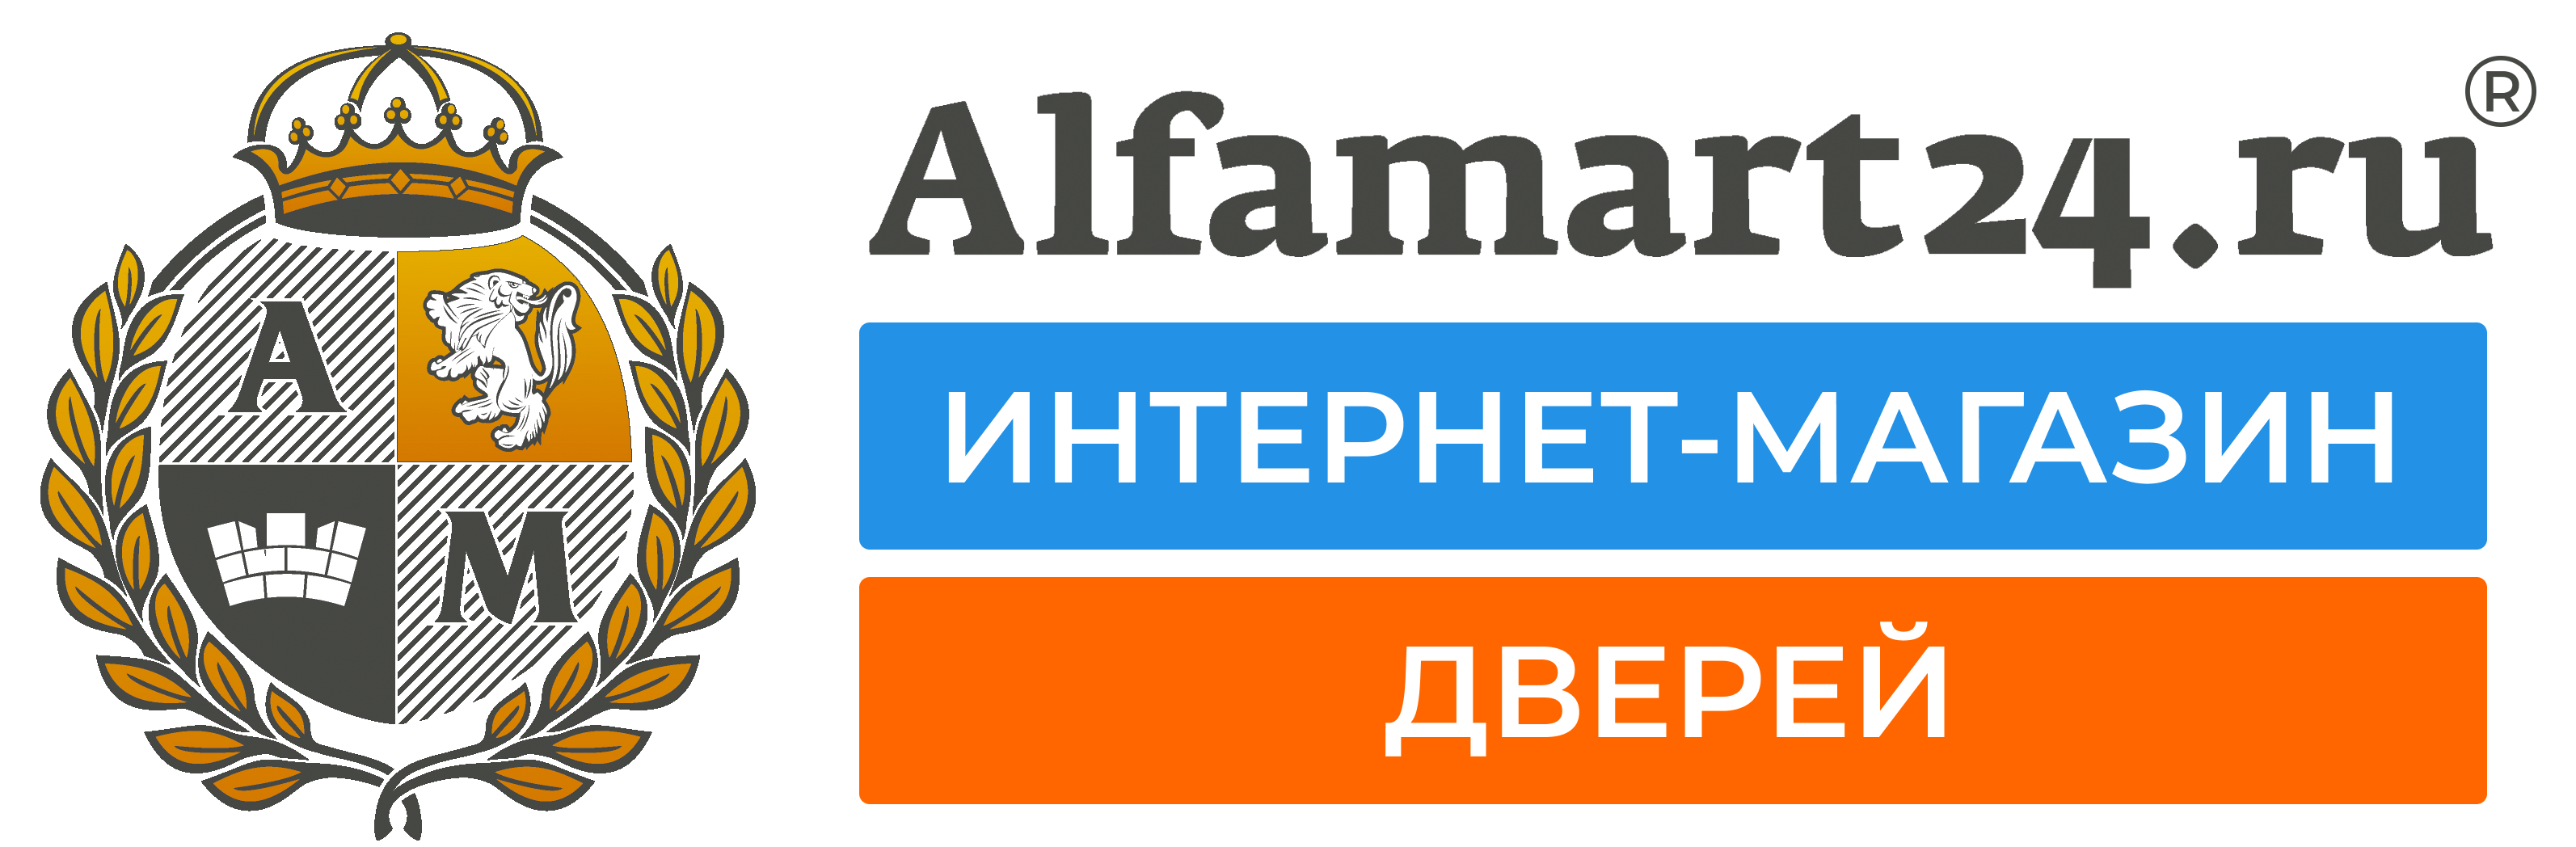 Alfamart24.ru - ИНТЕРНЕТ-МАГАЗИН ДВЕРЕЙ